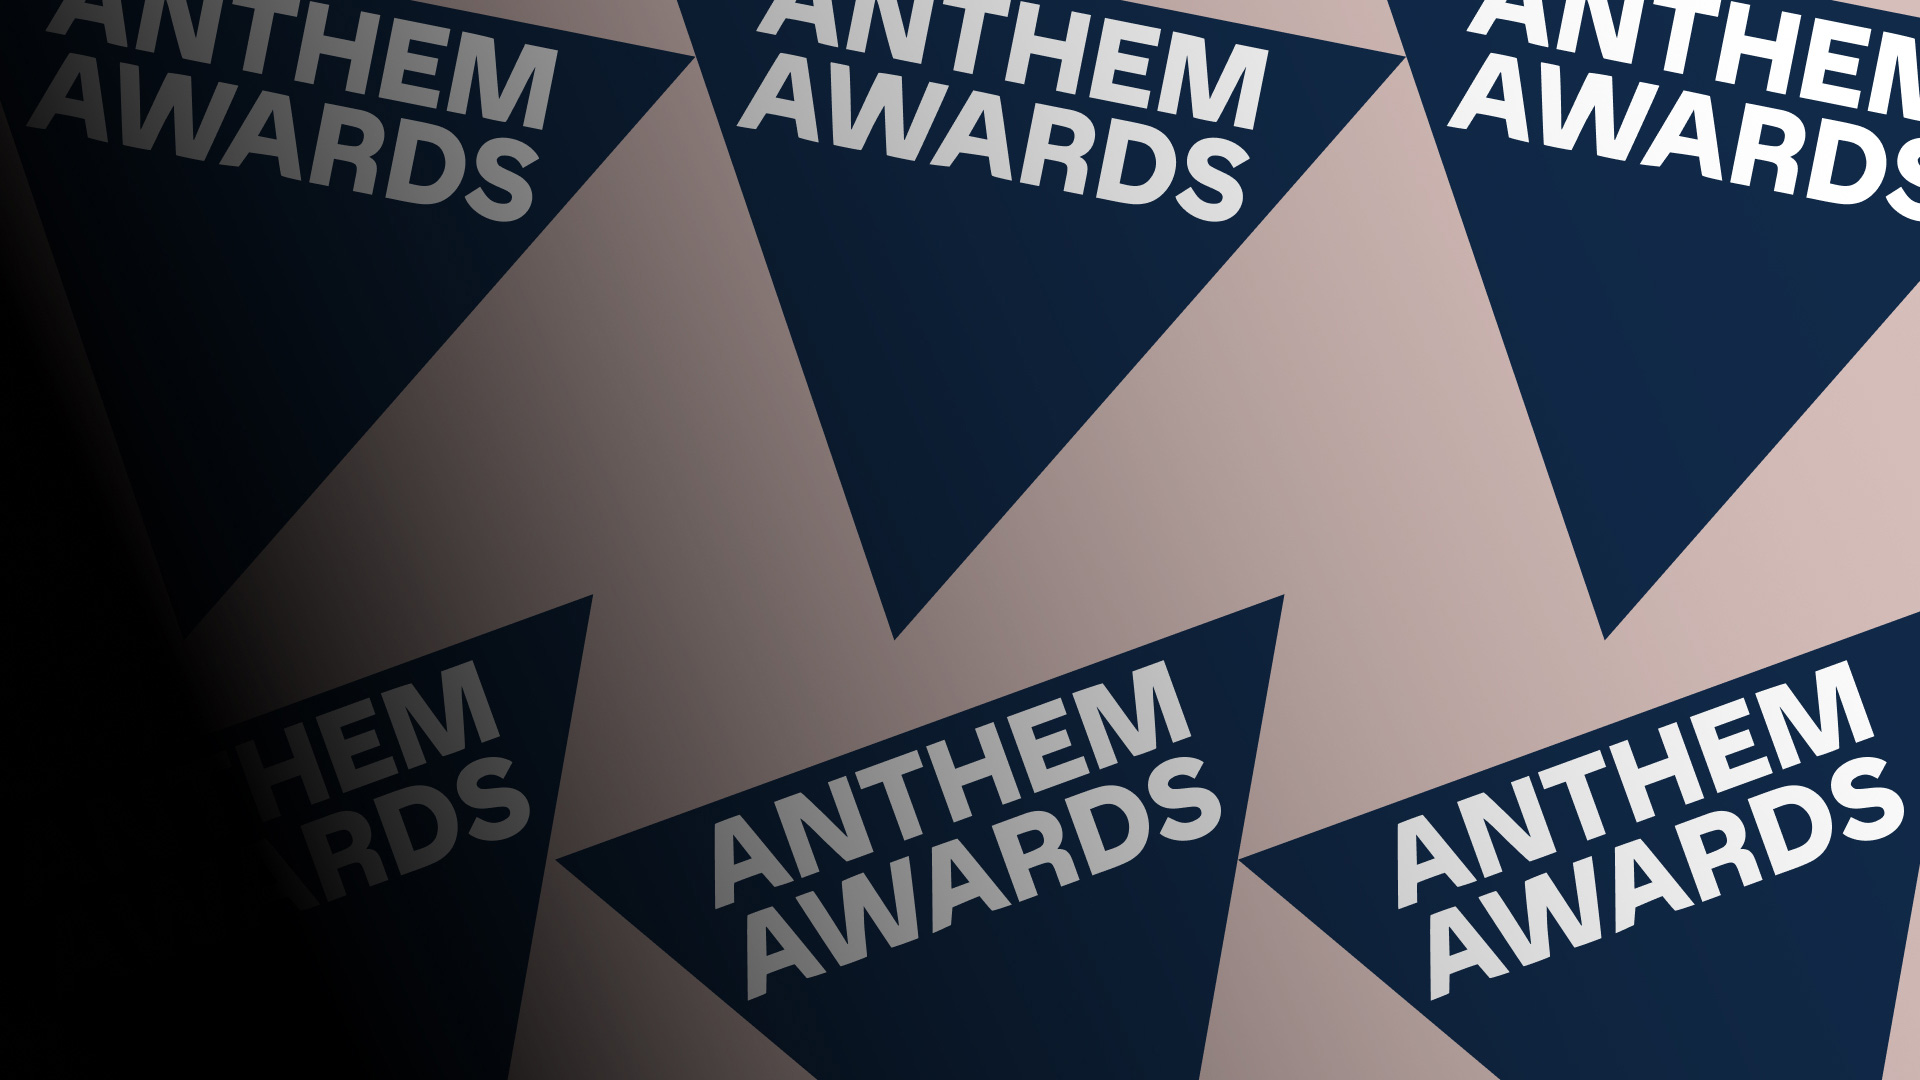 homepage carousel 1920x1080 1 Anthem awards